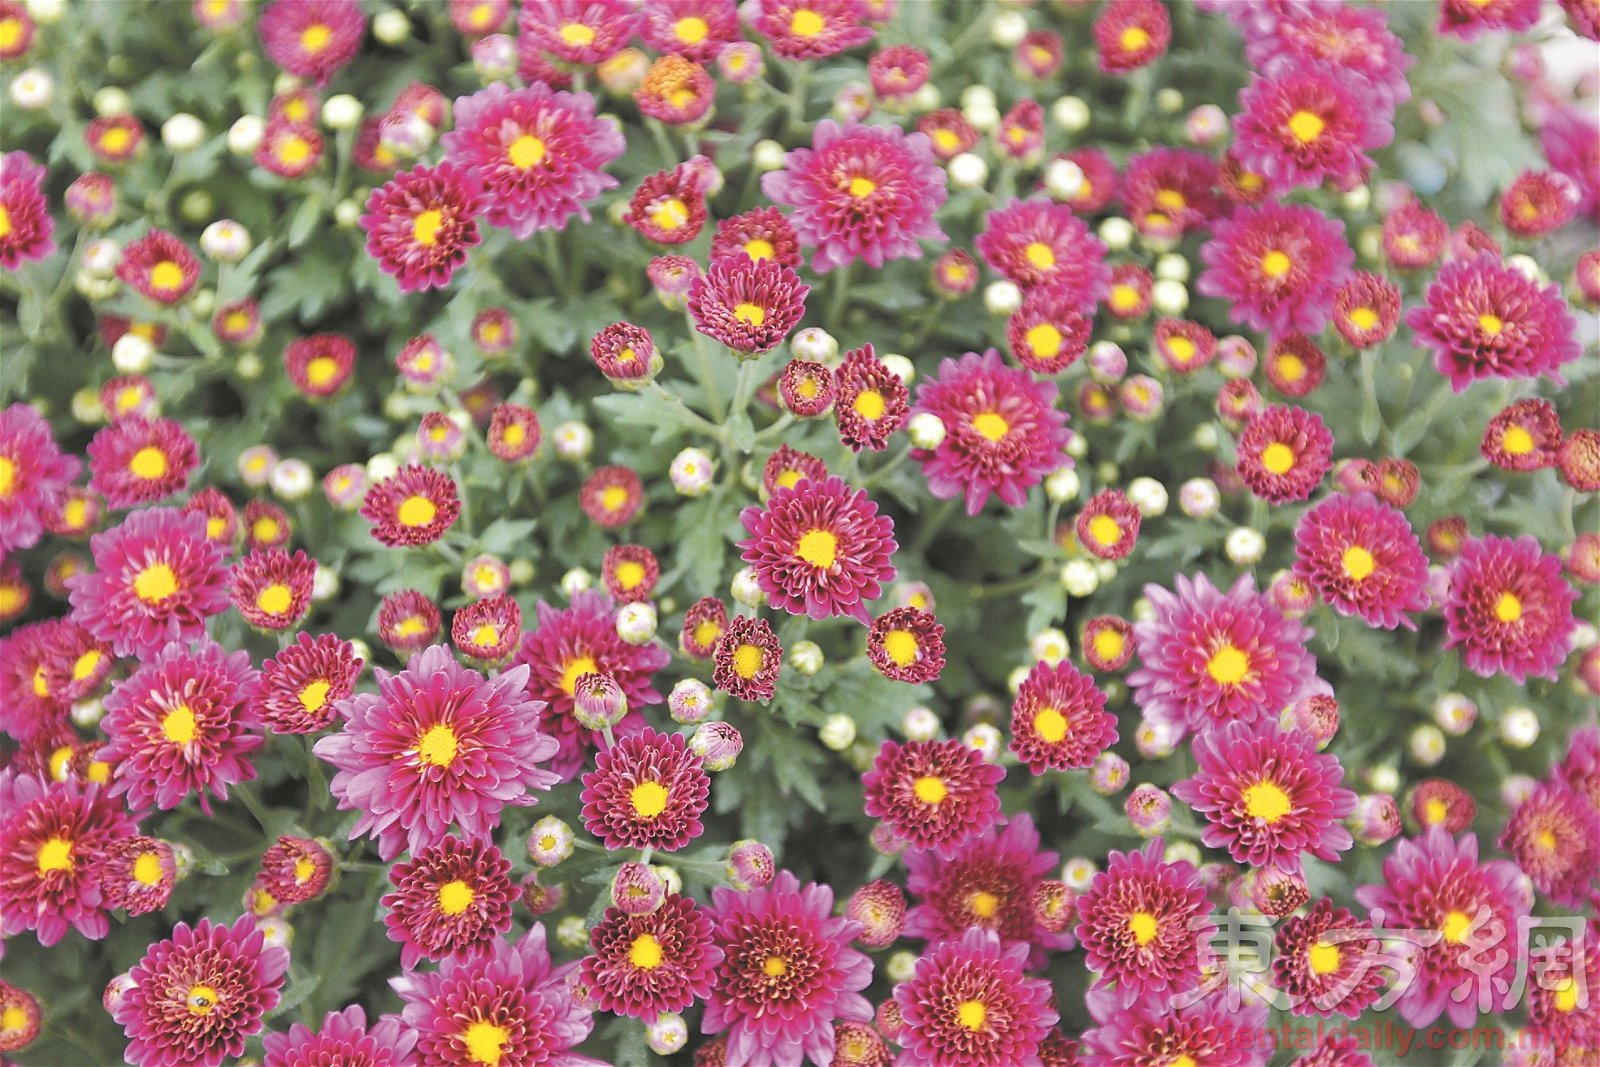 小小朵颜色鲜艳的日本菊花非常耀眼，由于具有蓬松感，所以外形上多了一份其他花卉没有的气质。